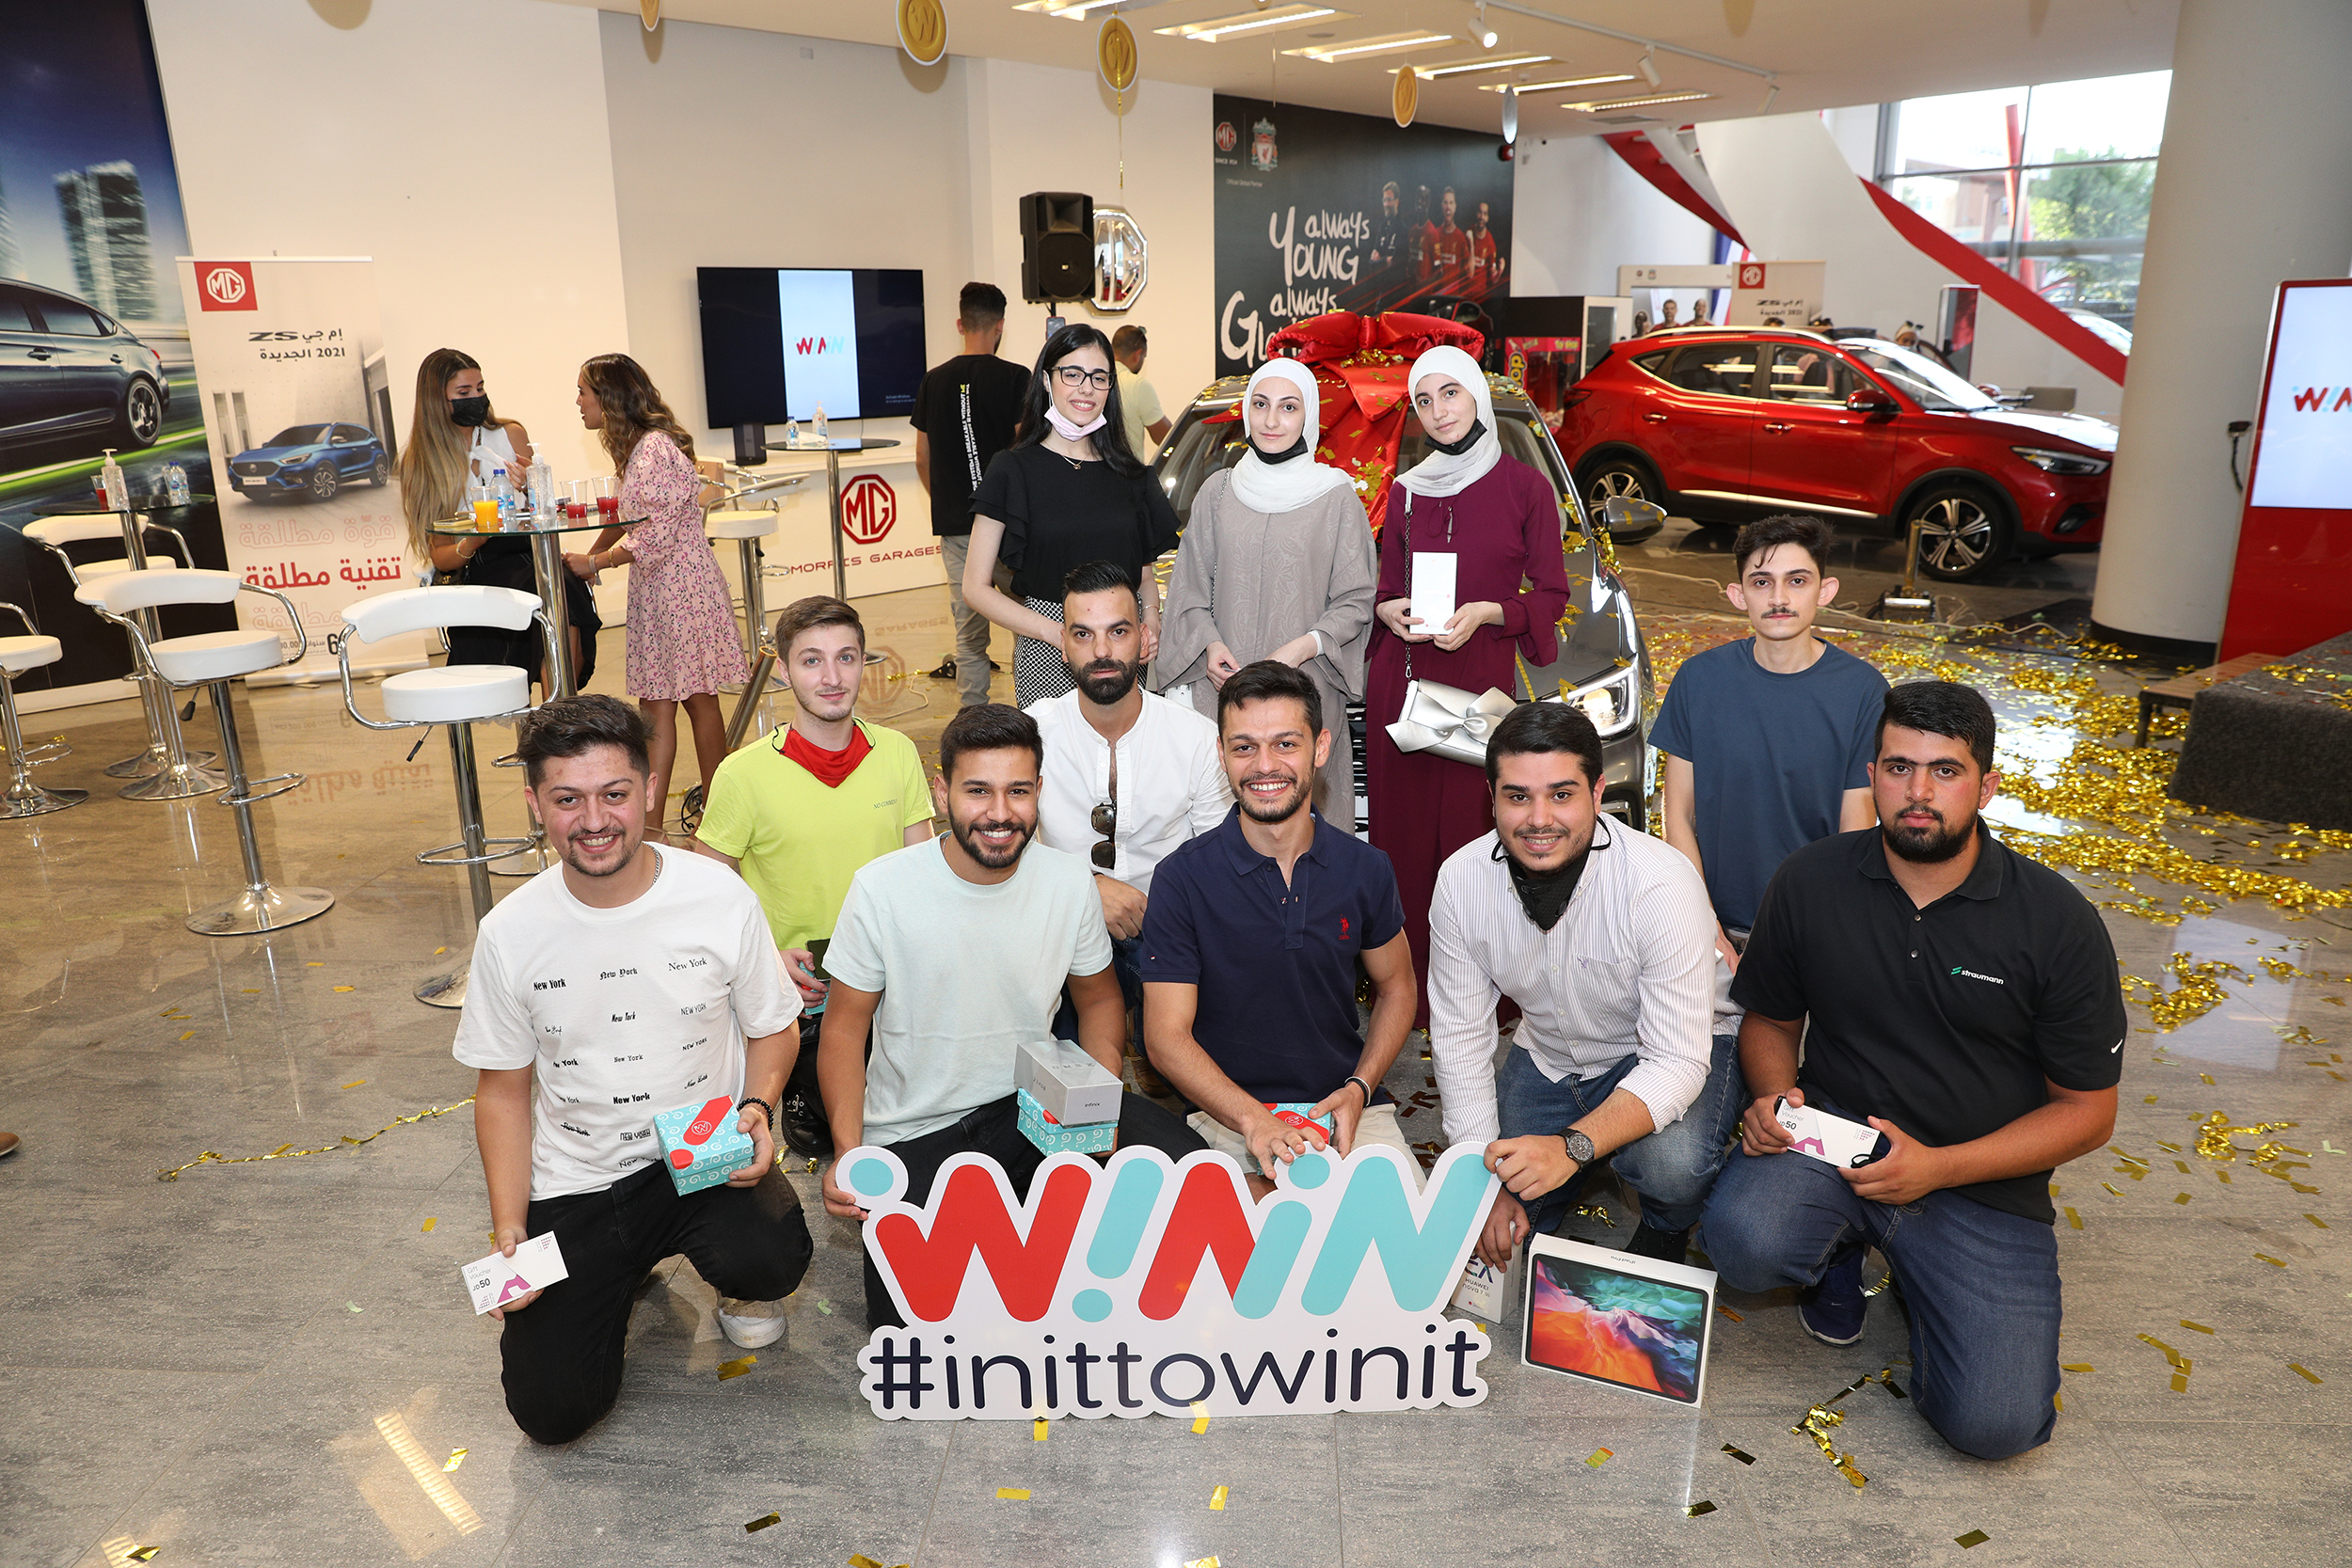 توزيع جوائز مسابقة "البحث عن الكنز" في الاردن من تطبيق WININ، أول تطبيق للواقع المعزز في العالم العربي